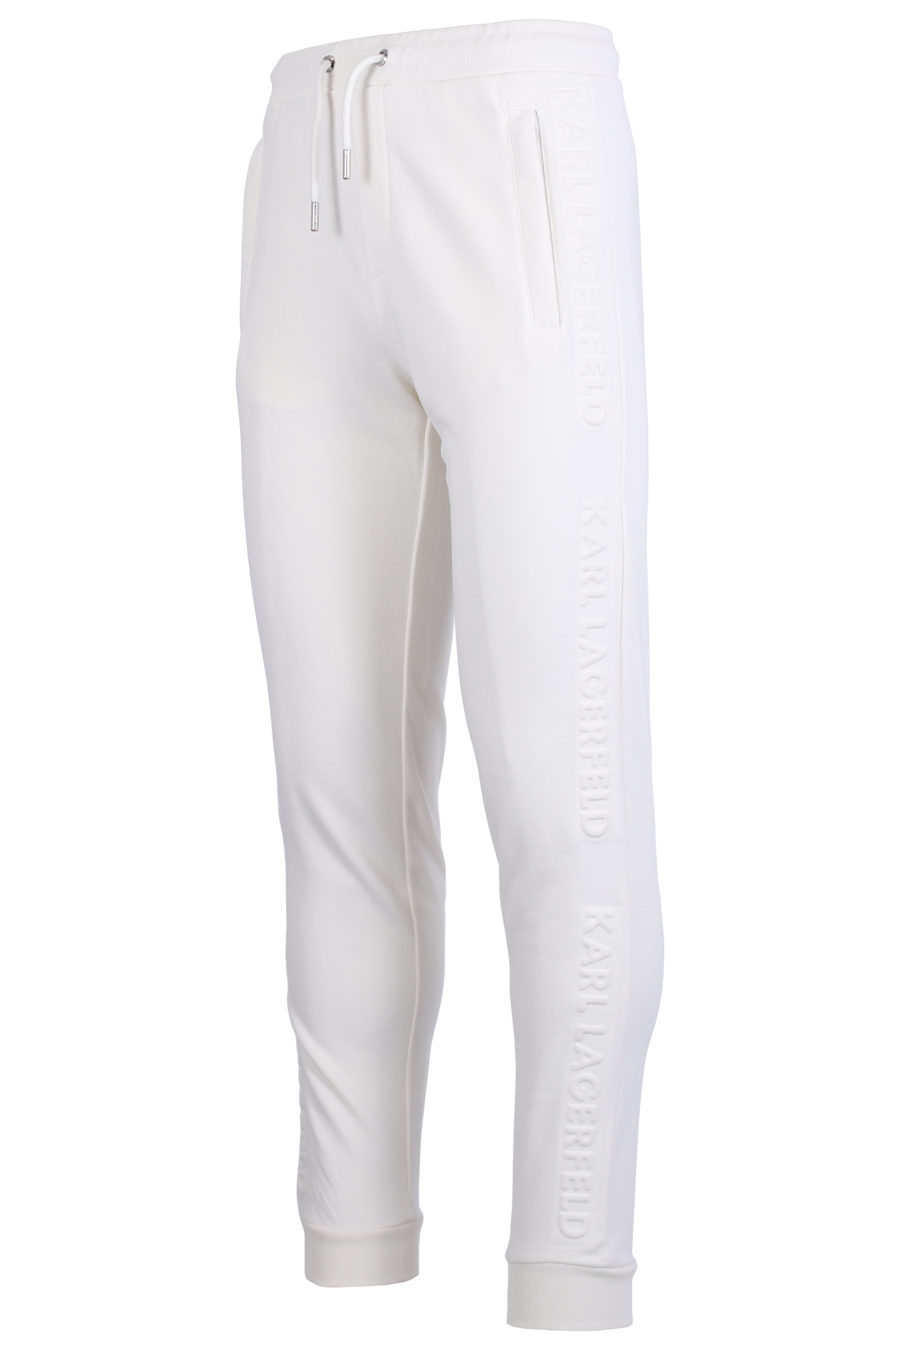 Pantalón de chándal blanco con logotipo en relieve - IMG 0620